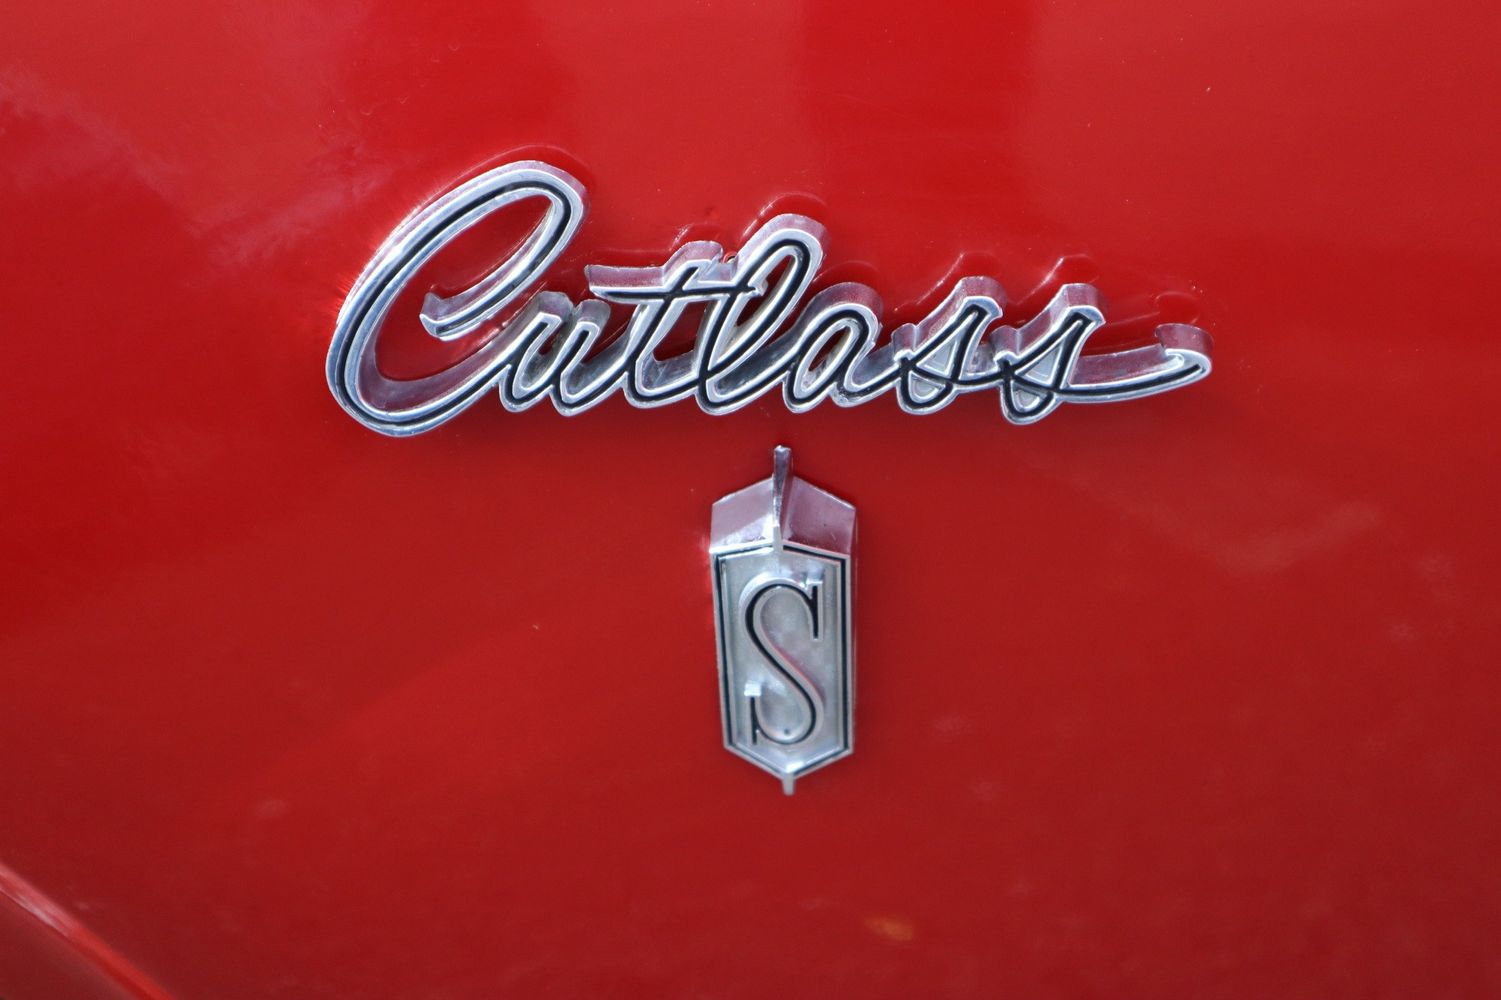 1968 Oldsmobile Cutlass S | Victory Motors of Colorado